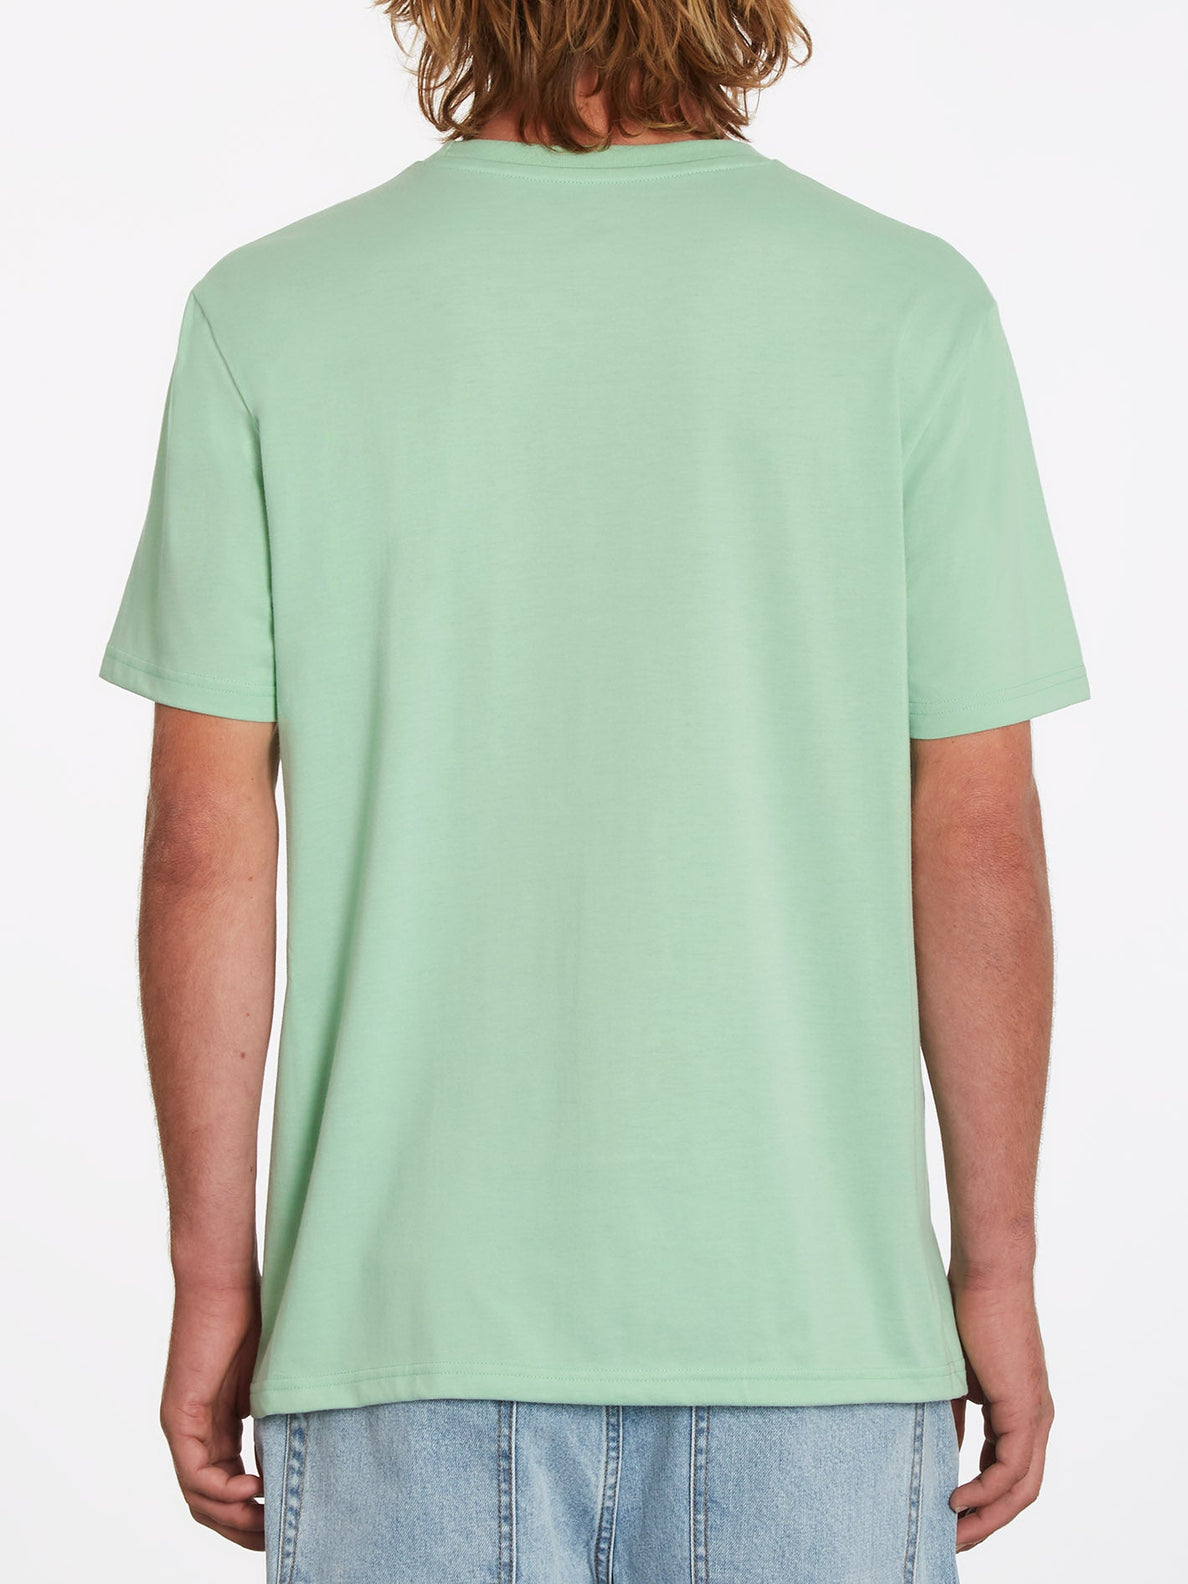 Circle Blanks T-shirt - LICHEN GREEN (A5712050_LCG) [B]